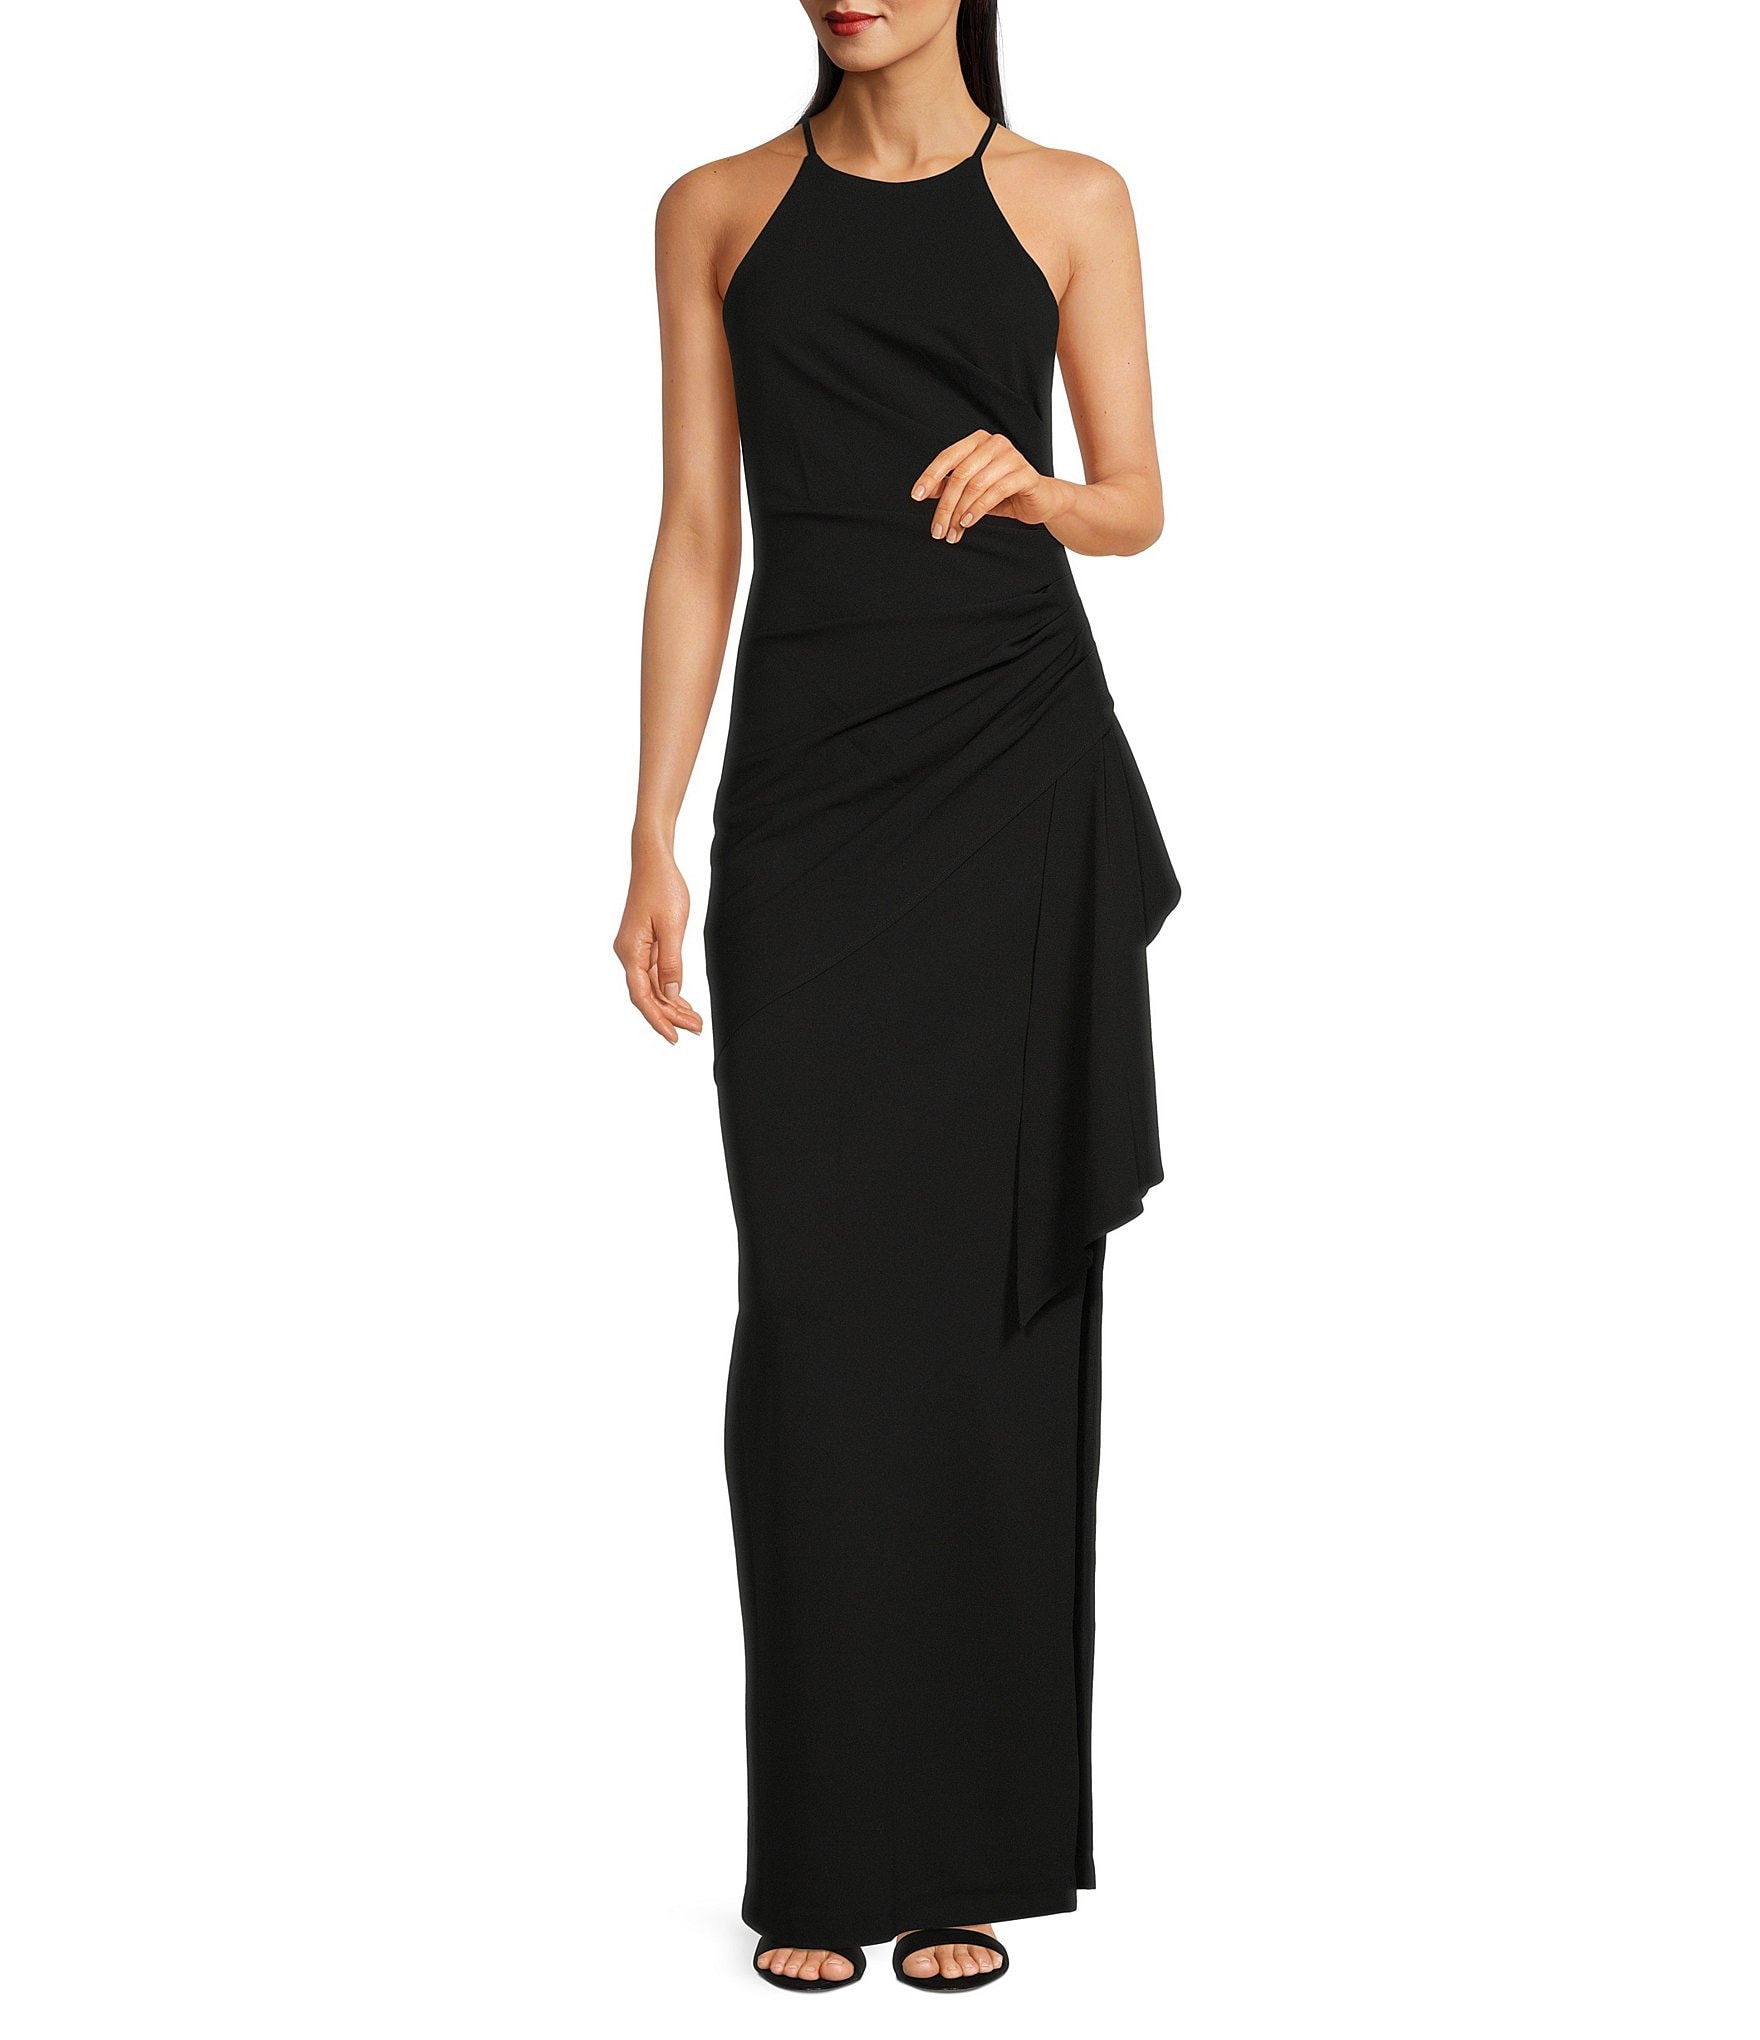 Clearance Halter Women's Formal Dresses & Evening Gowns | Dillard's